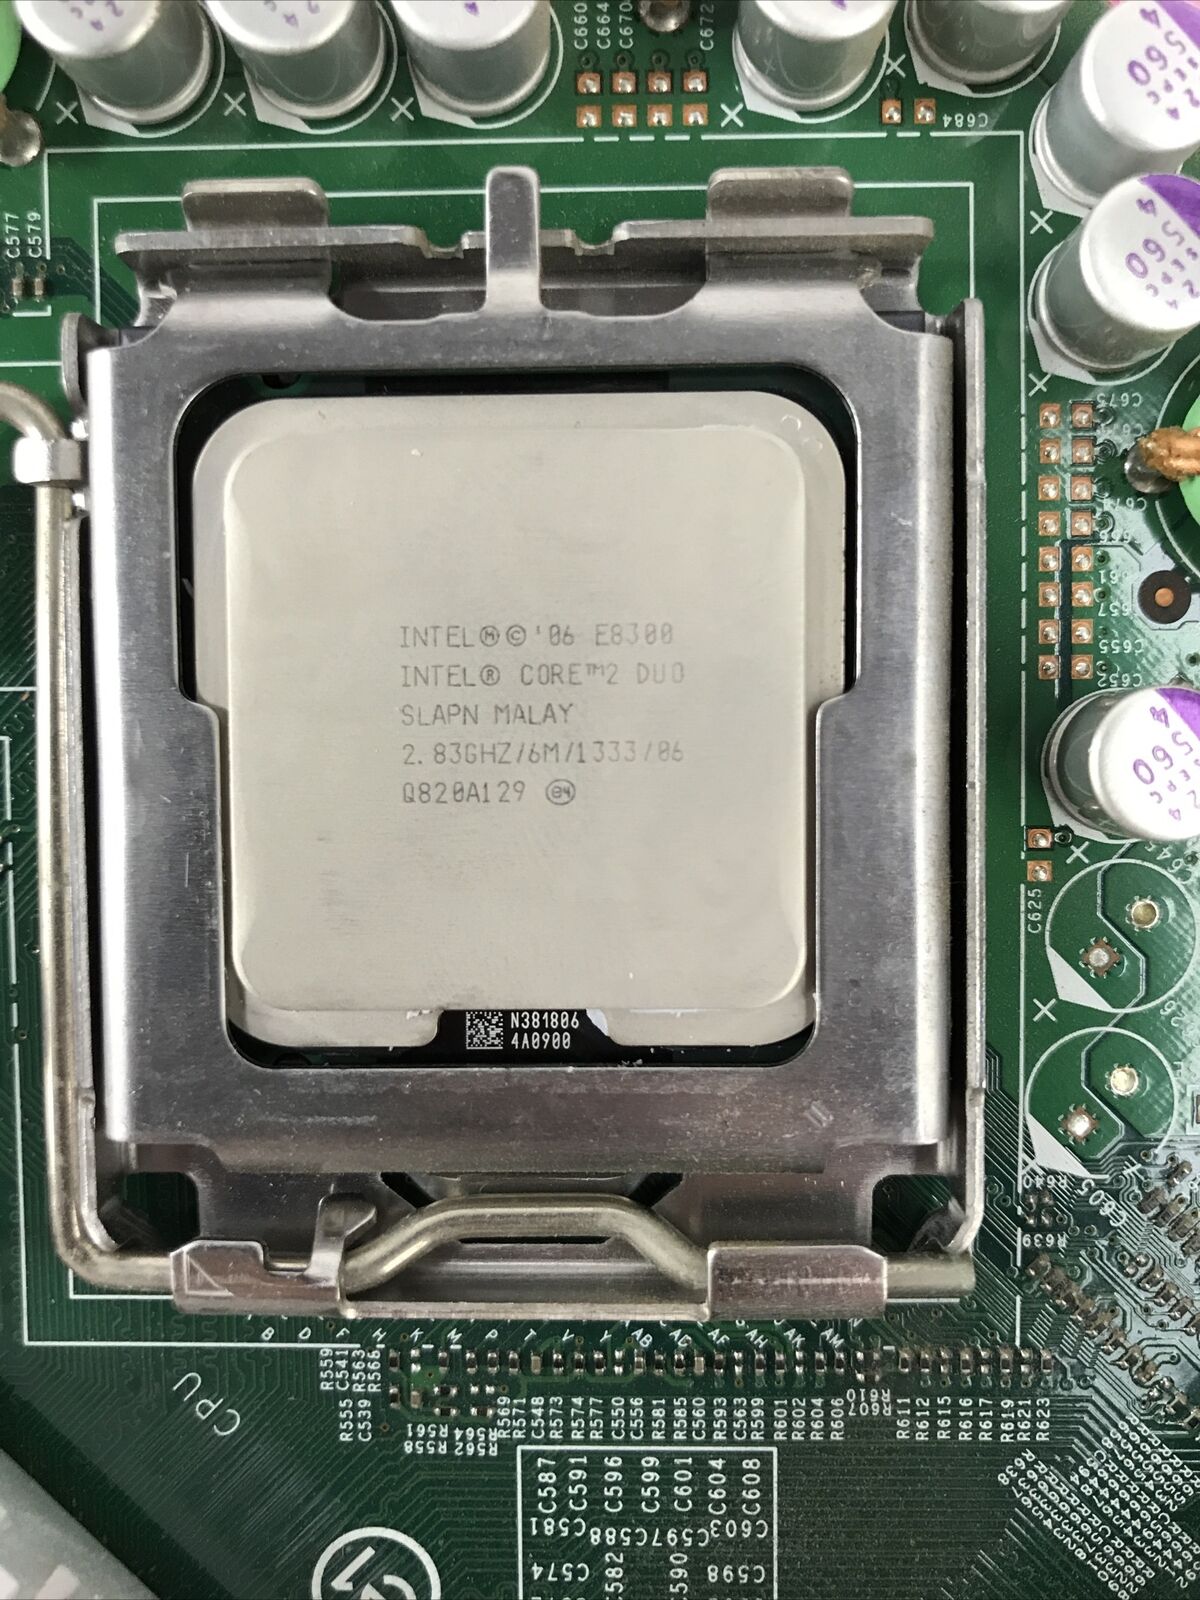 Dell OGM819 Motherboard Intel Core 2 Duo E8300 2.83GHz 2GB RAM